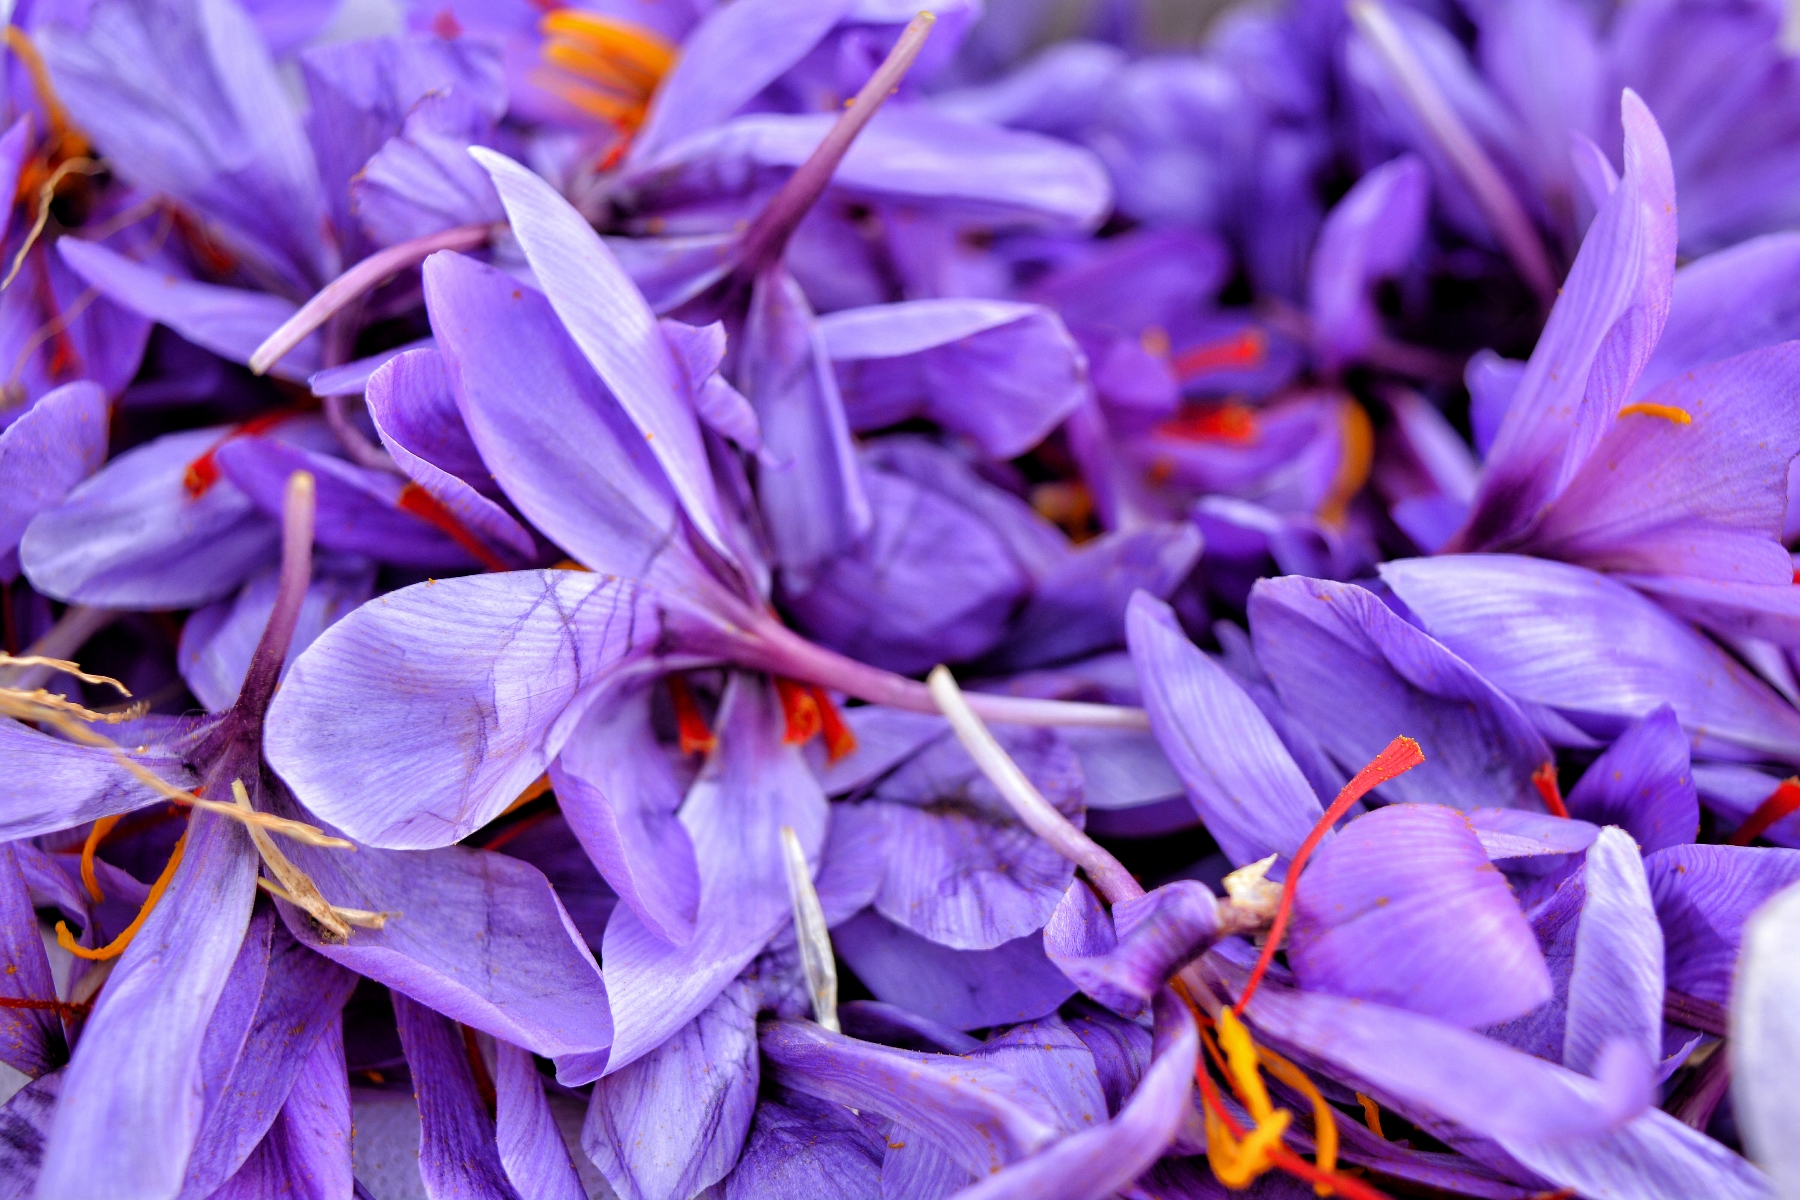 Saffron flowers up close. Image By; Qazi Wasif 